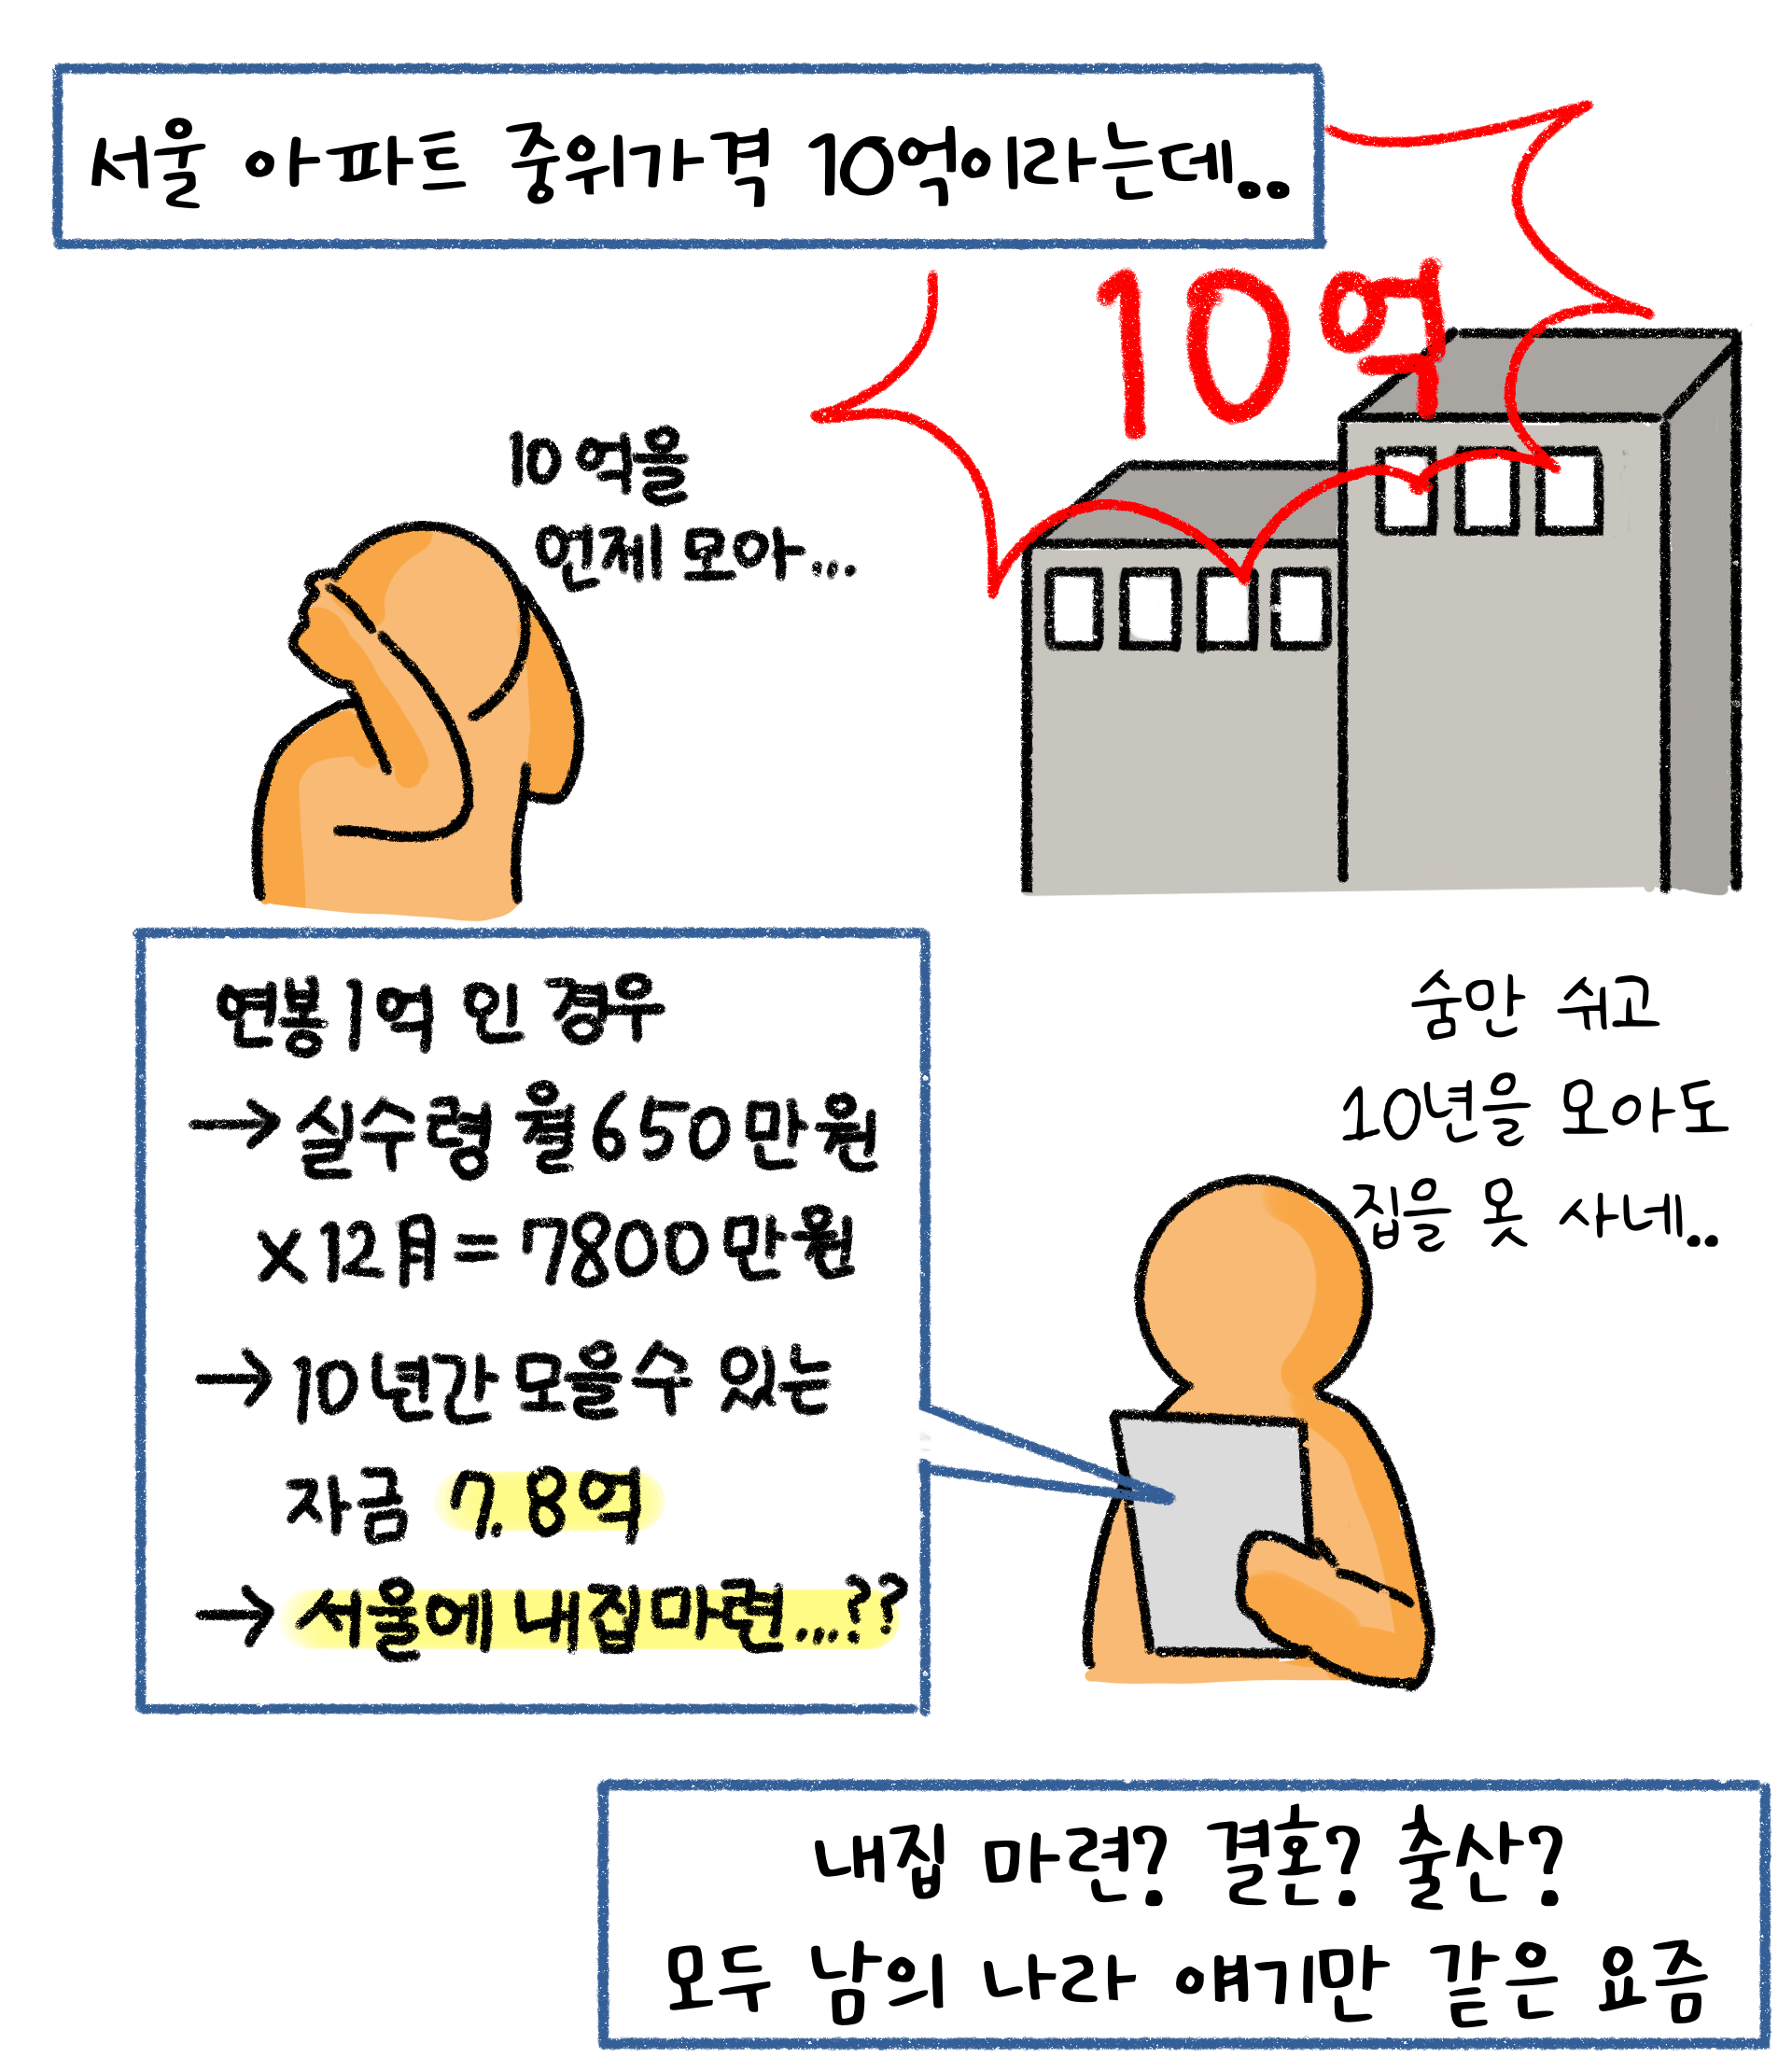 '서울 아파트 중위가격'이 10억이라면, 연봉이 1억인 경우 10년간 모아도 '내집마련'이 힘들다는 것을 나타내고 있음.